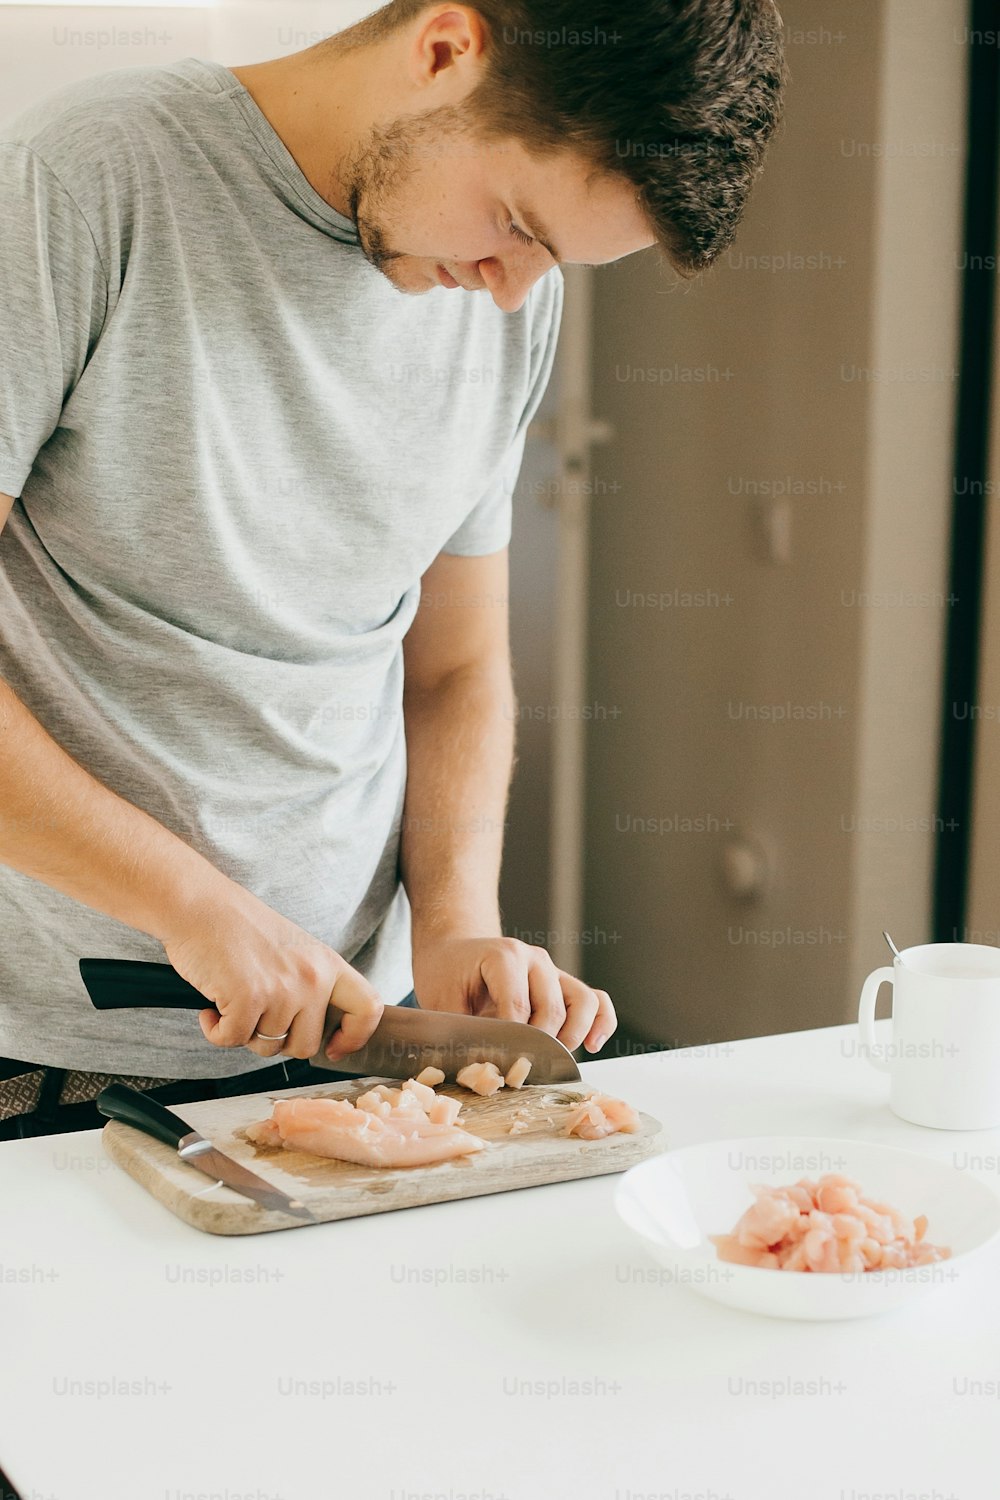 Joven cortando filete de pollo con cuchillo en tabla de madera en cocina blanca moderna. Proceso de cocción y preparación de la carne, con las manos en alto. Concepto de cocina casera